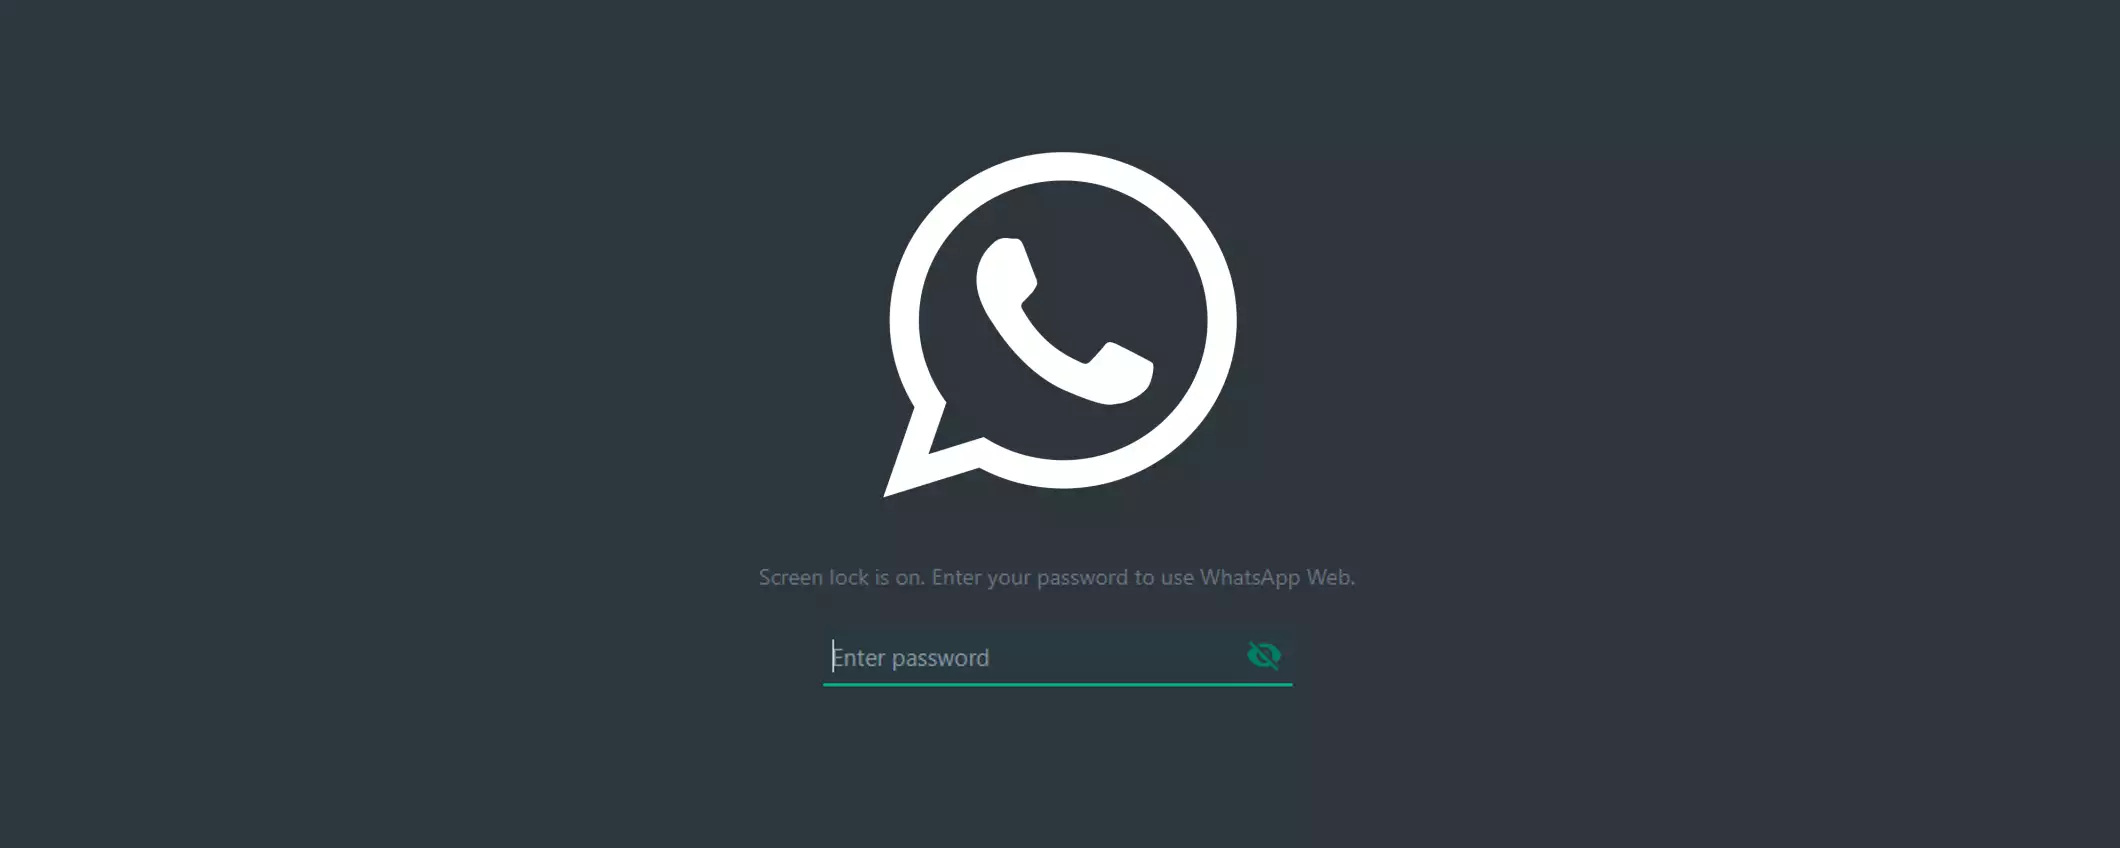 WhatsApp Web: è ora disponibile il blocco schermo con password